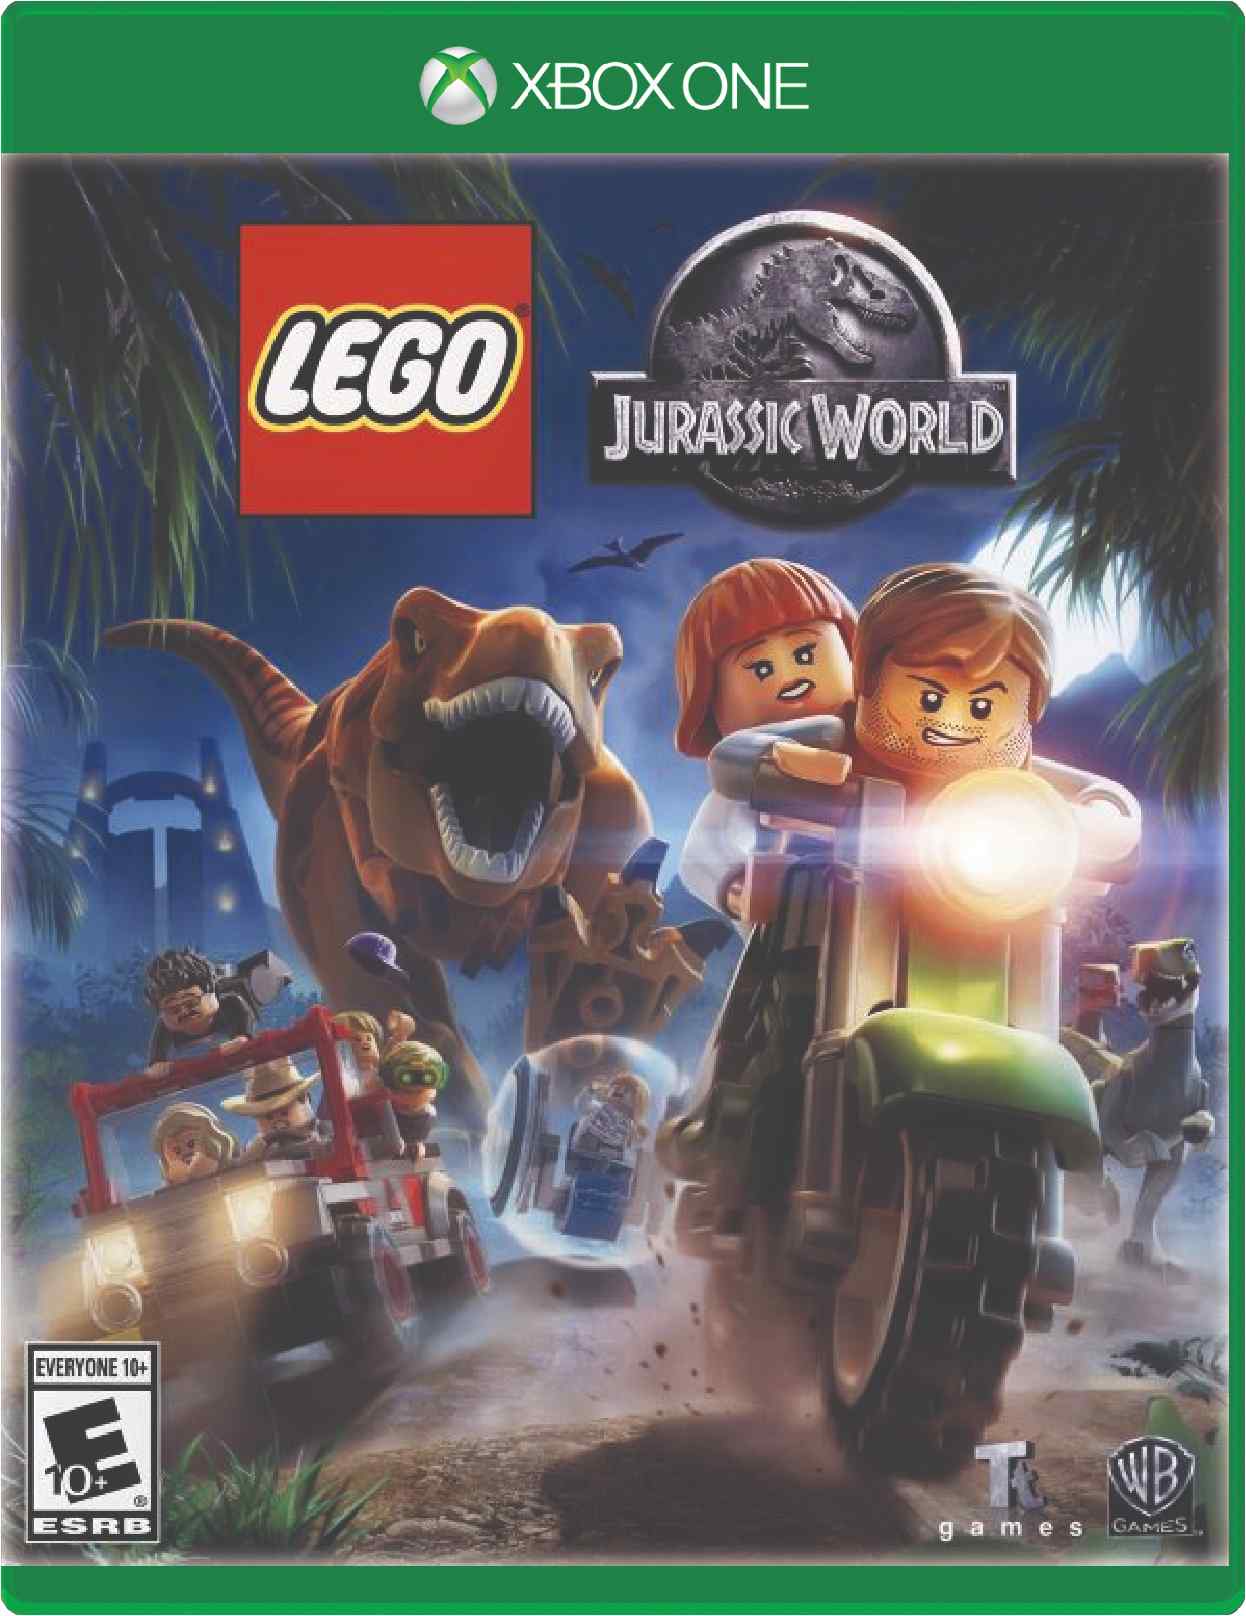 LEGO Jurassic World Cover Art